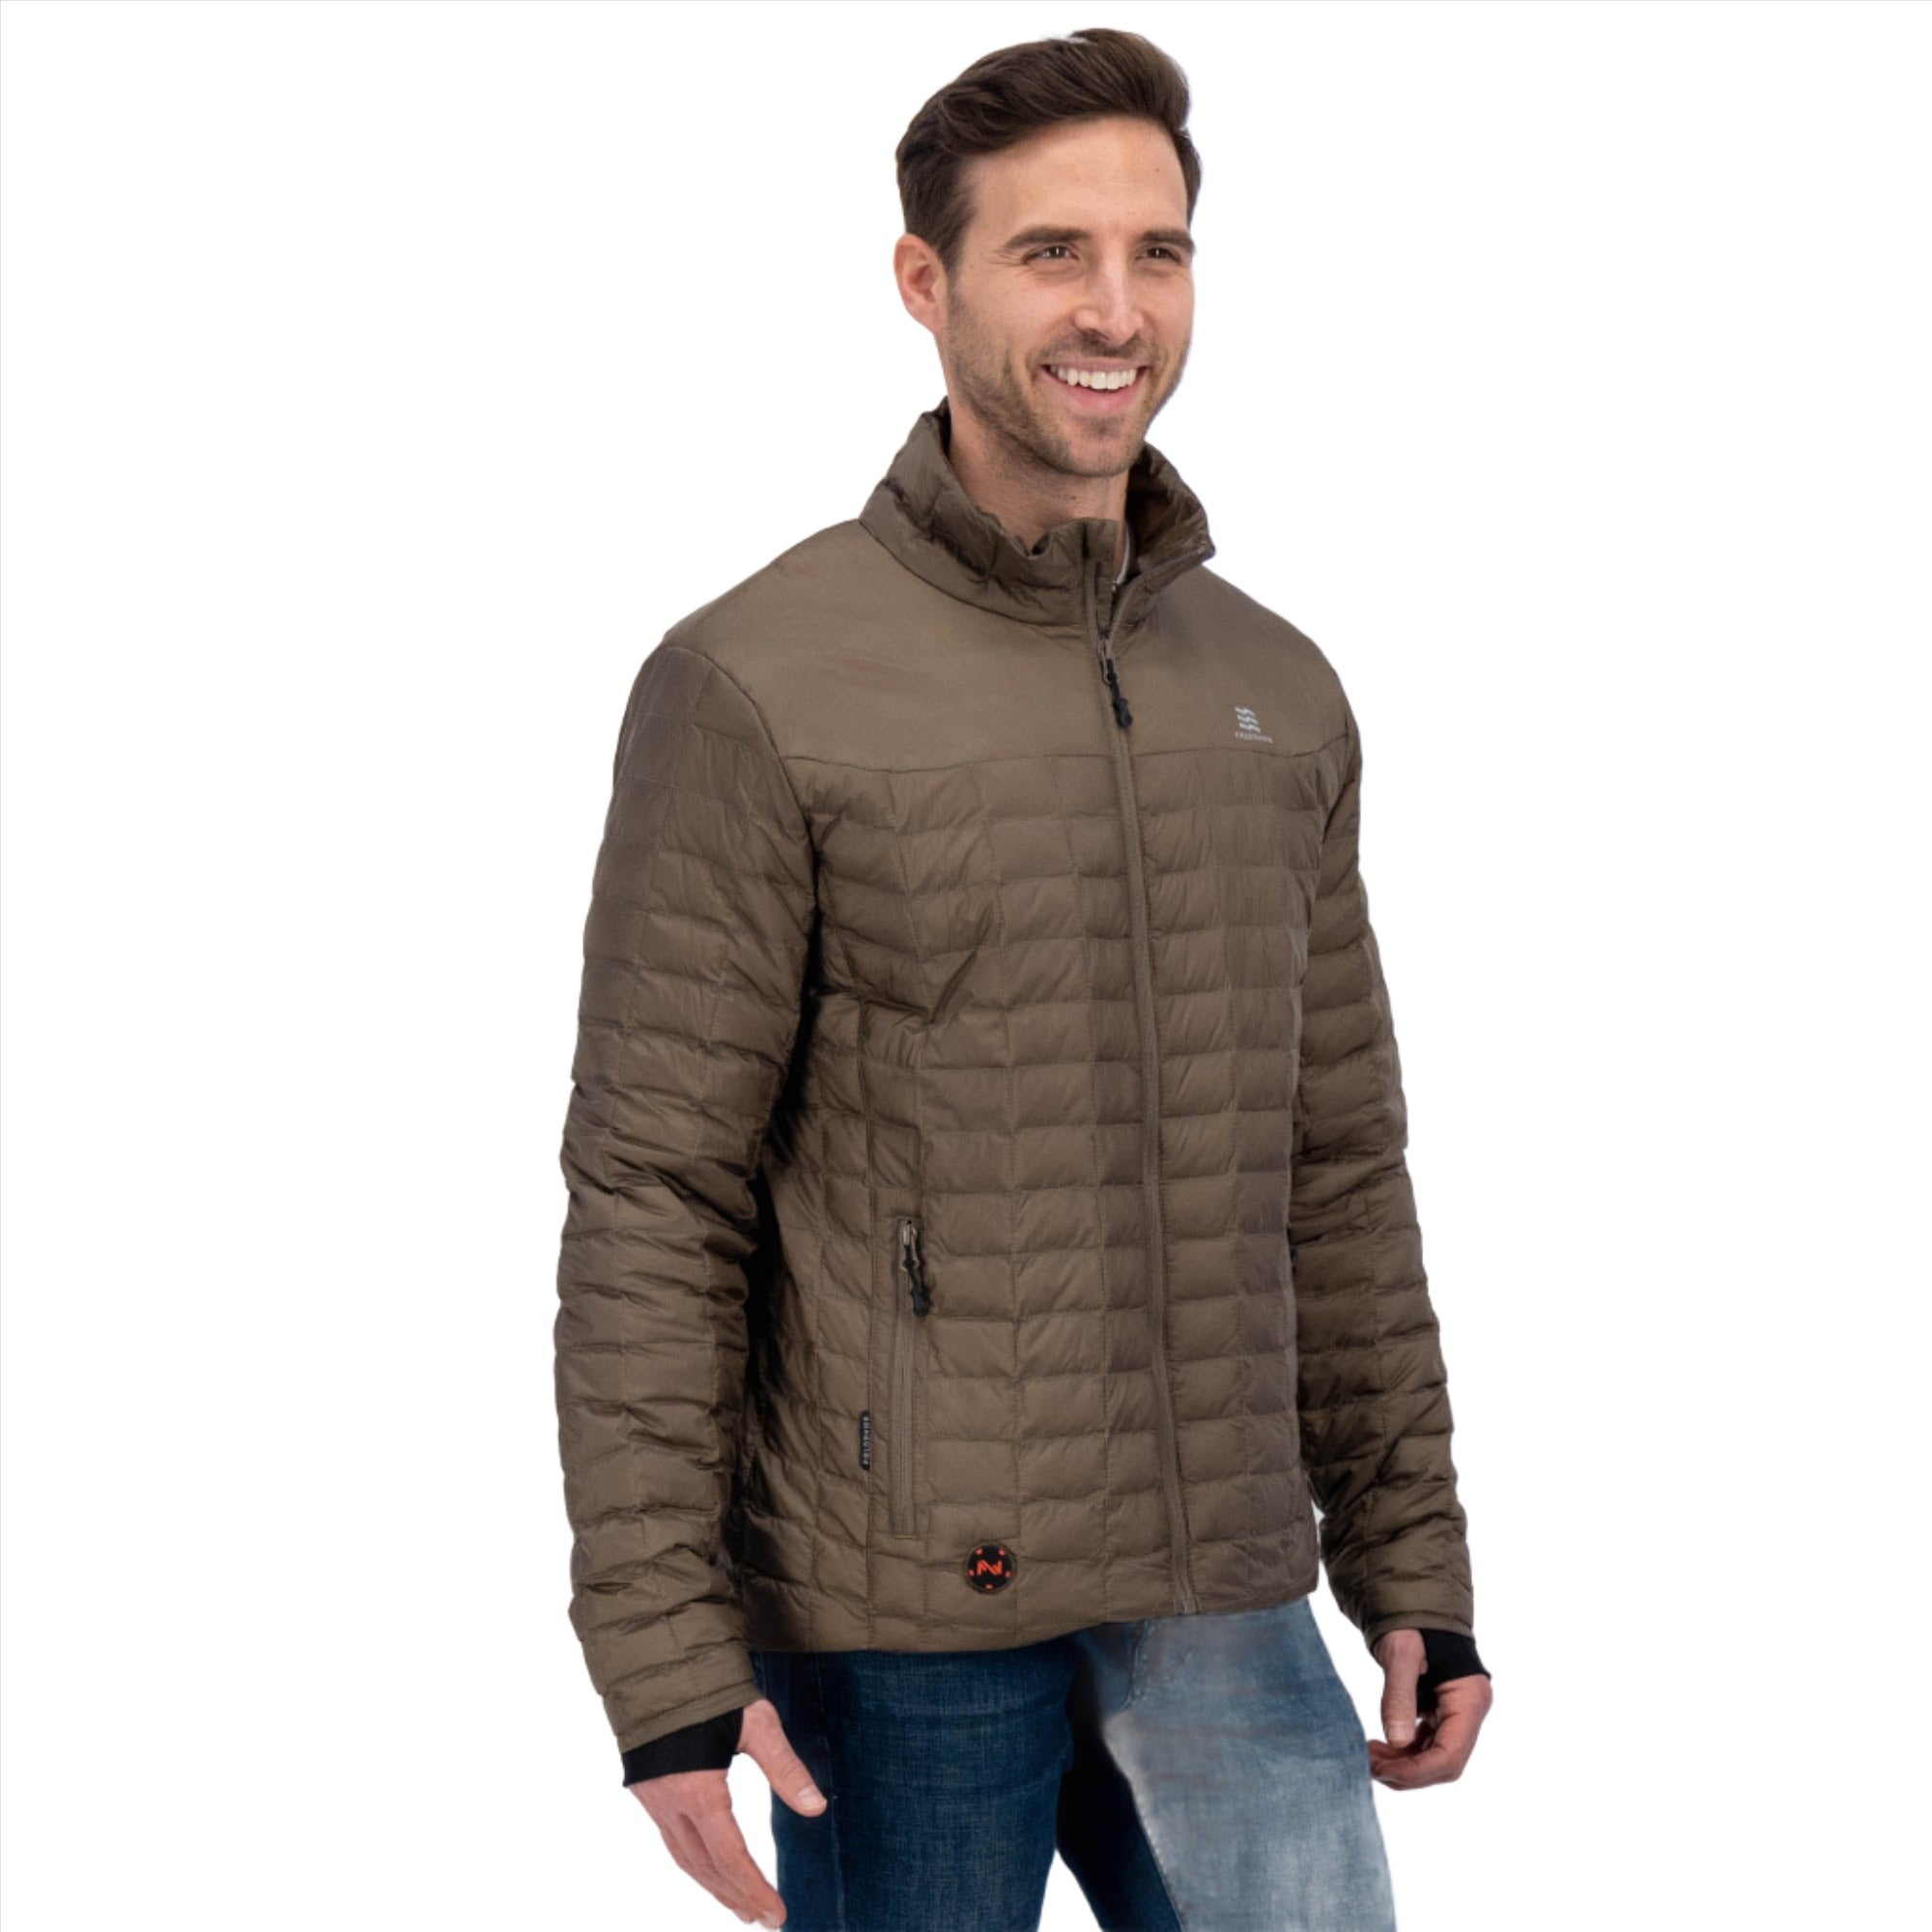 Snow Peak Hybrid Fleece Pullover - Men's - Clothing